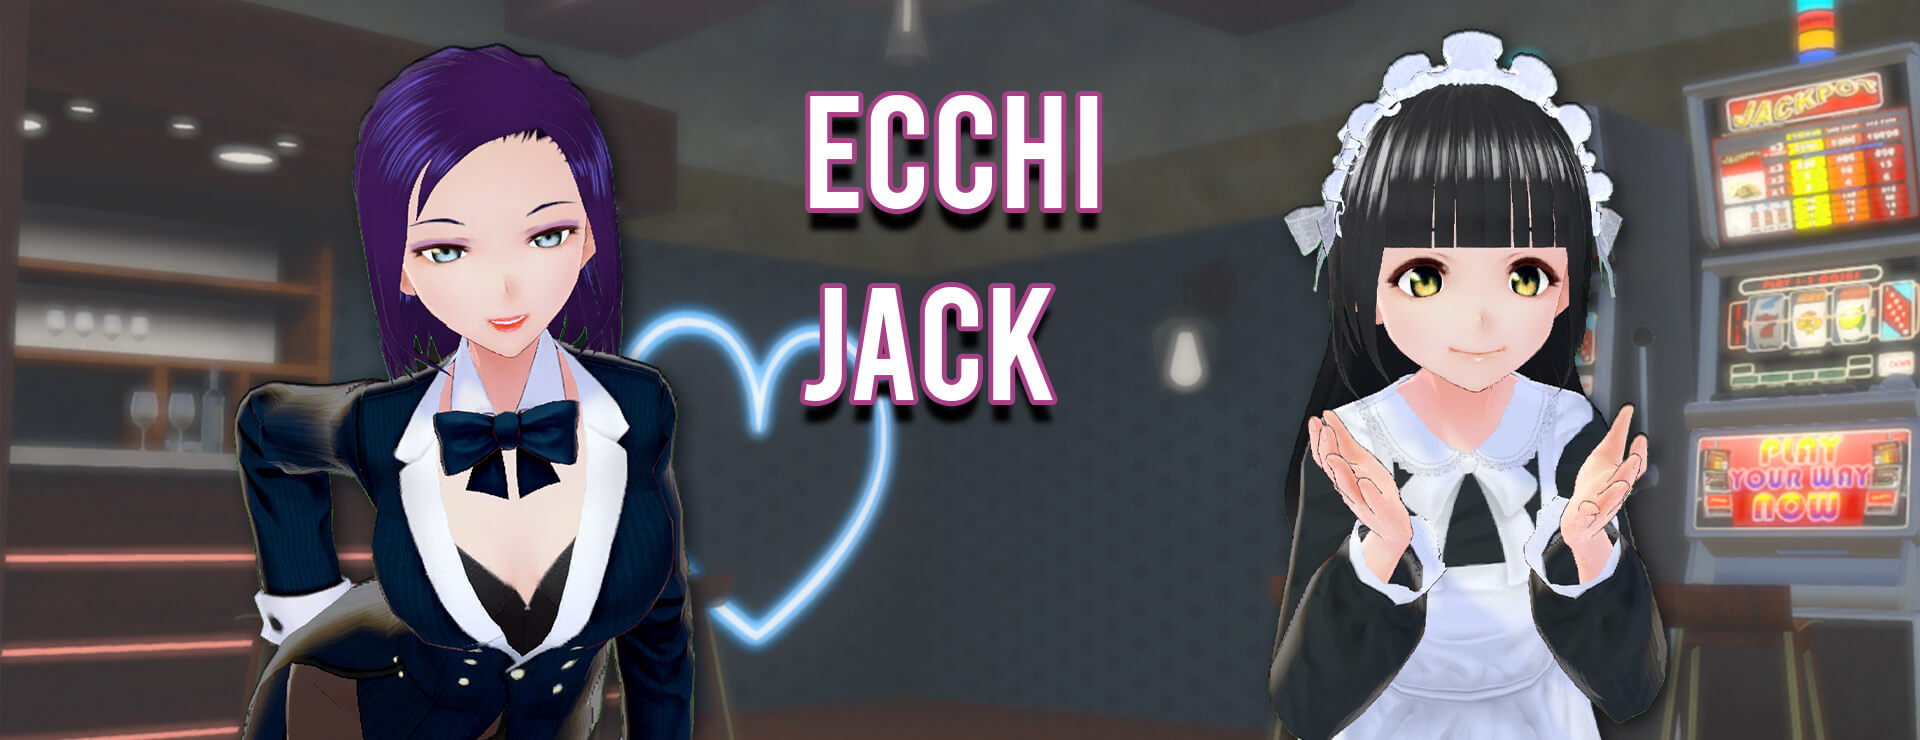 Ecchi Jack - Casual Jeu